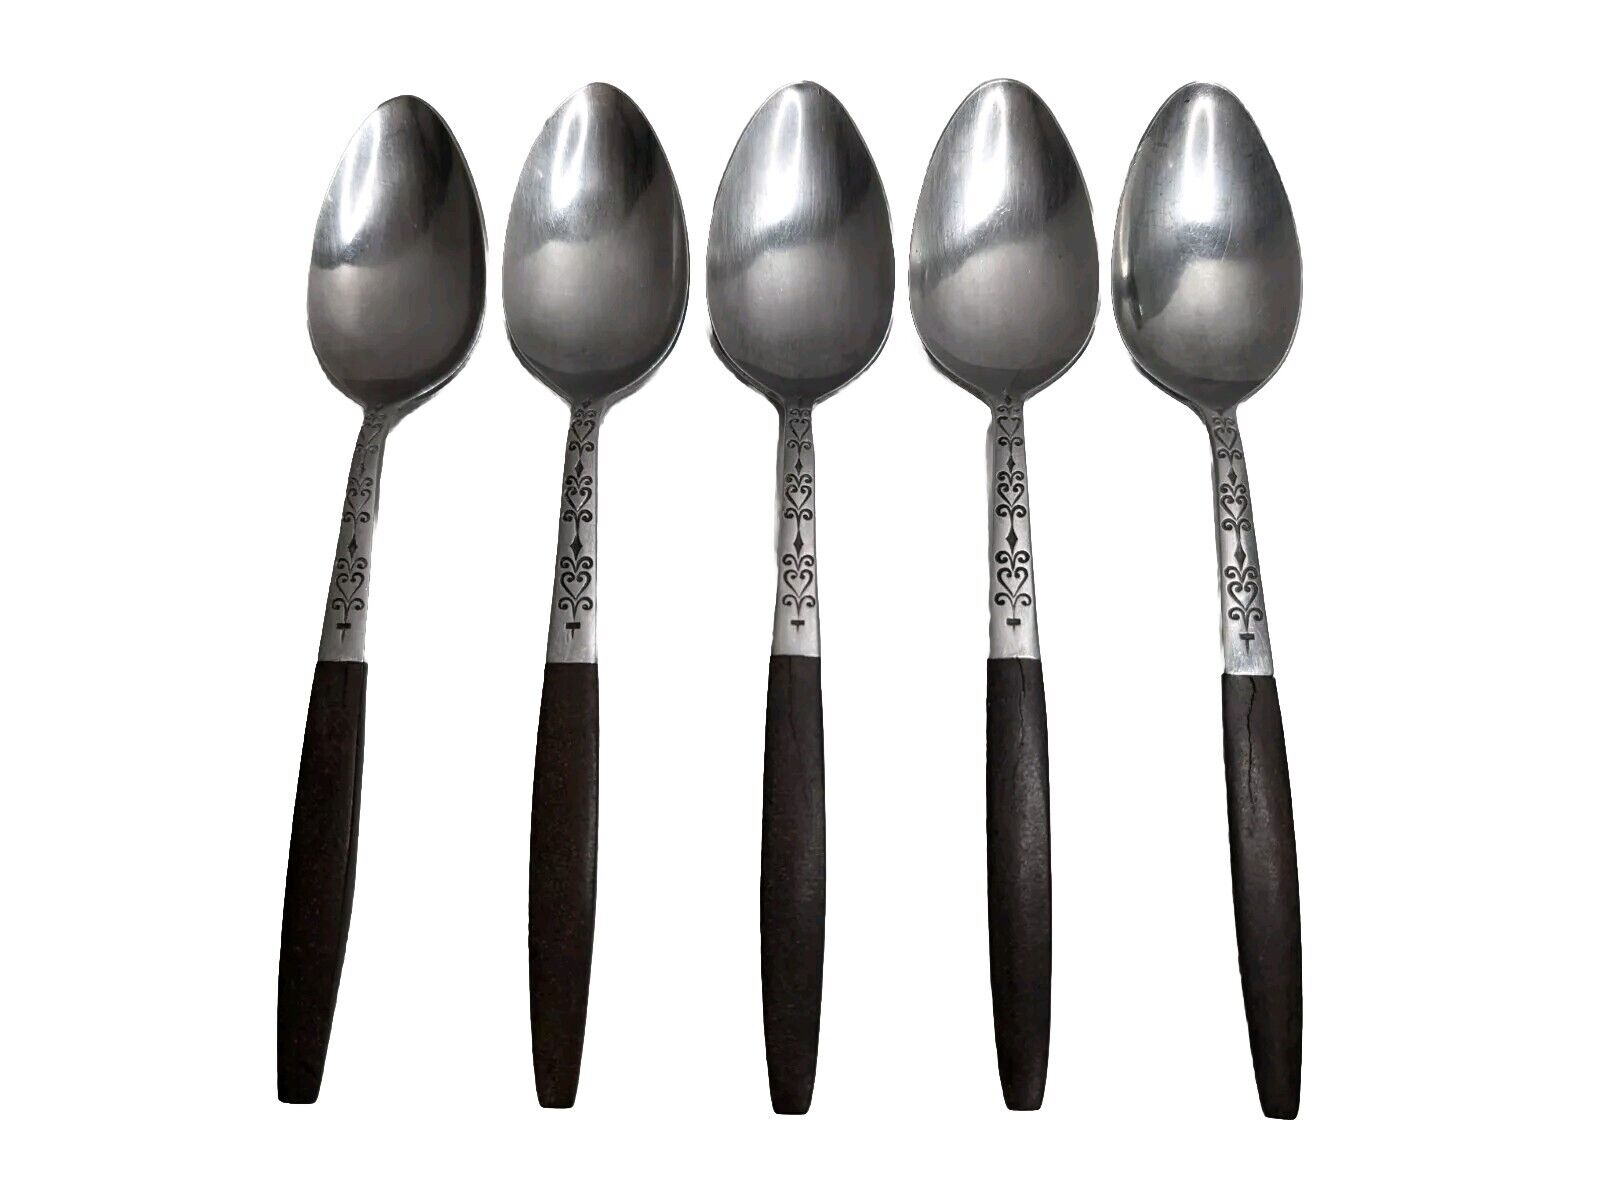 VTG INTERPUR Stainless Steel Brown Wood Handle TEASPOON Spoons Flatware Lot of 5